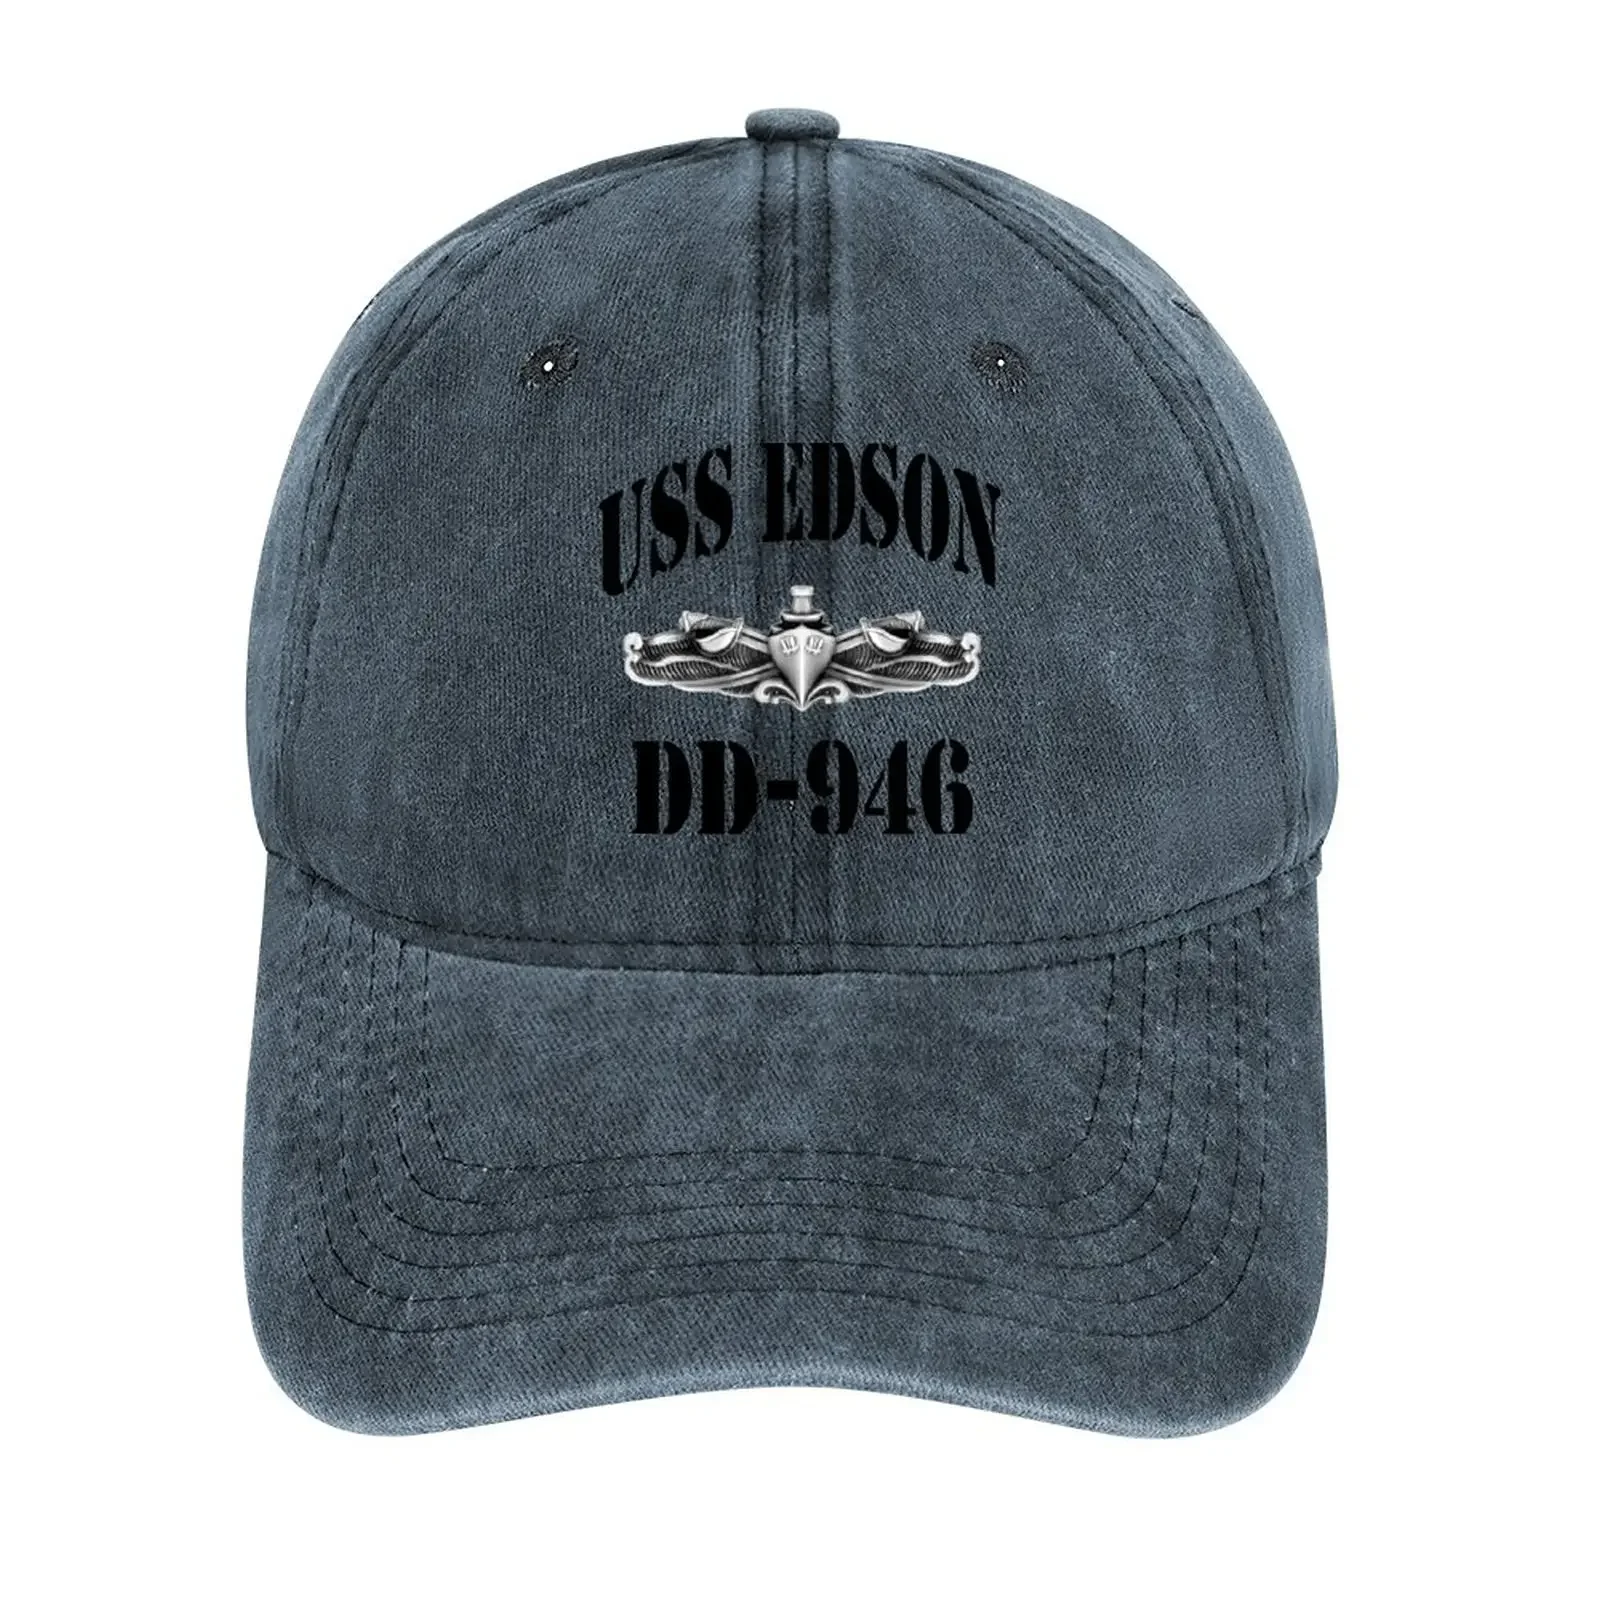 USS EDSON (DD-946) Корабельный МАГАЗИН Ковбойская шляпа, детская шляпа, кепки для пляжных прогулок, женская одежда для гольфа, мужская одежда